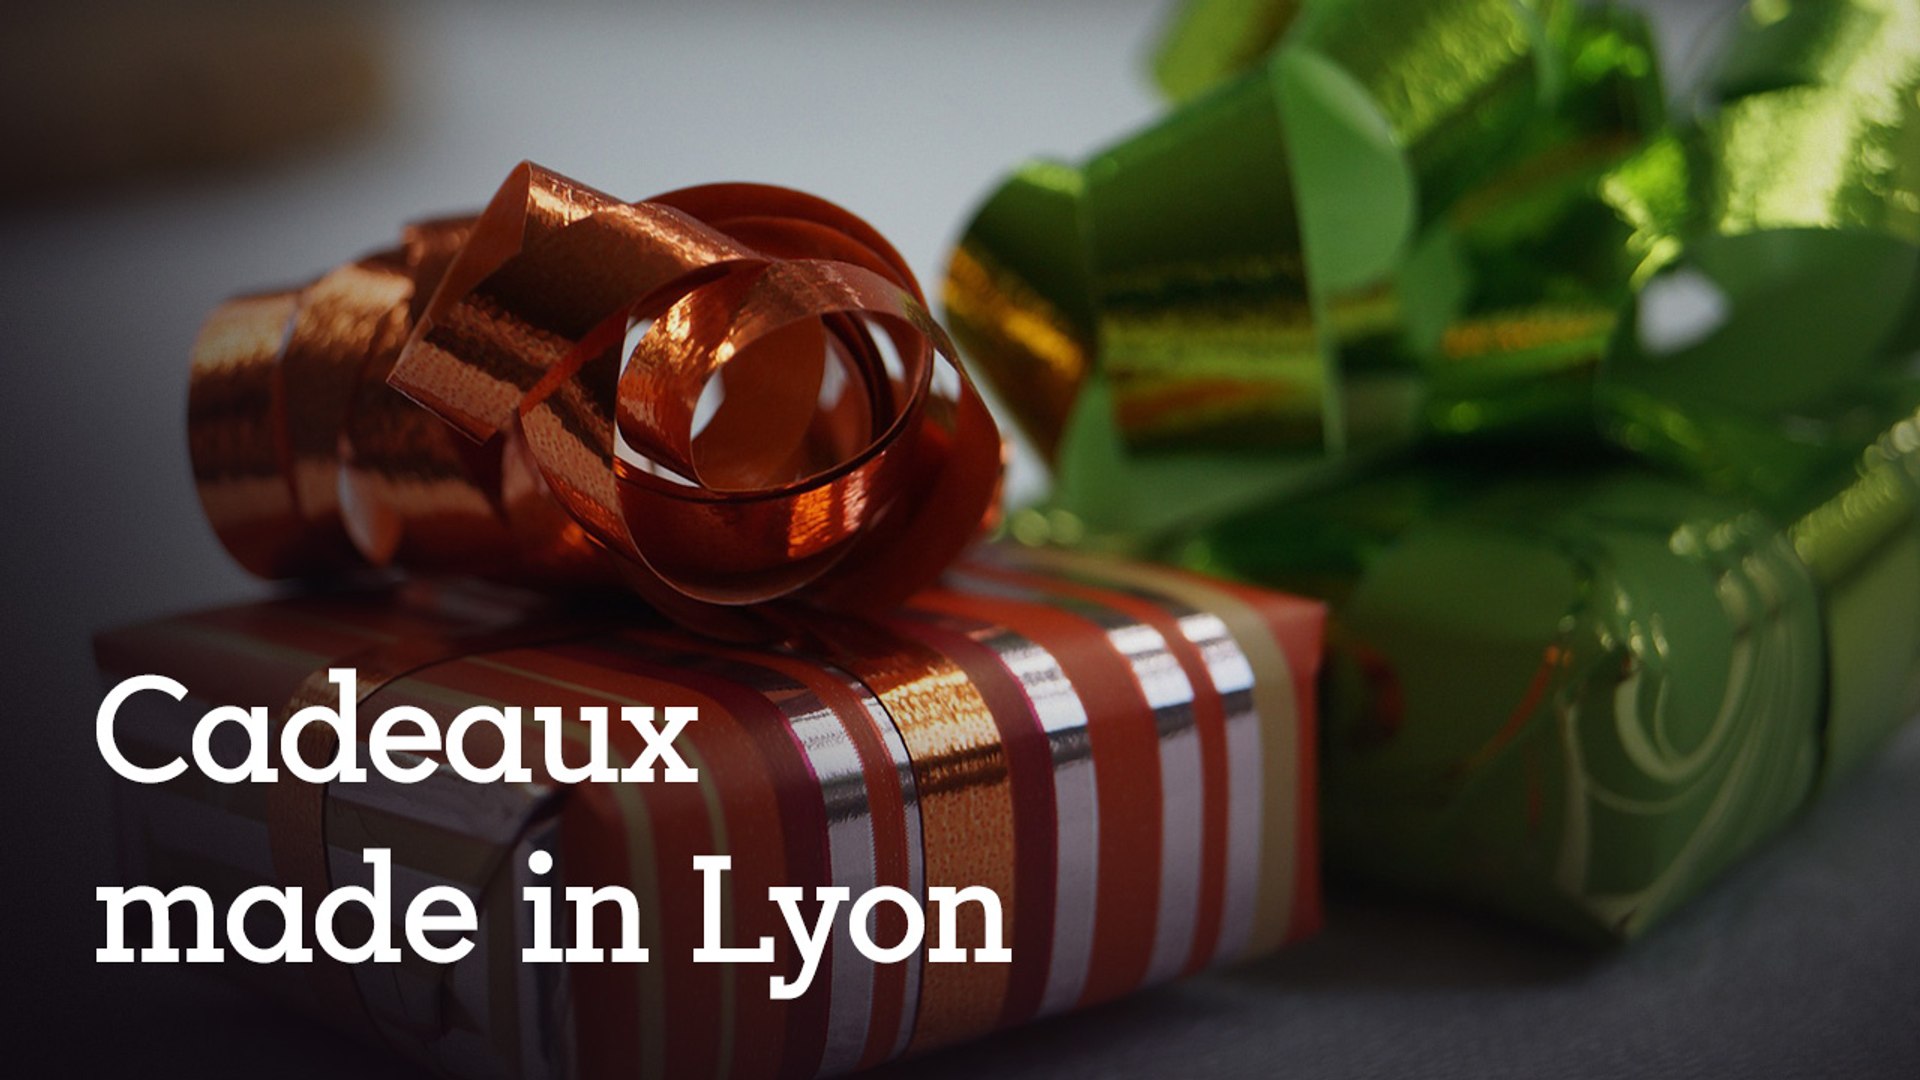 Noël. Des idées de cadeaux de "Made in Lyon" - Vidéo Dailymotion